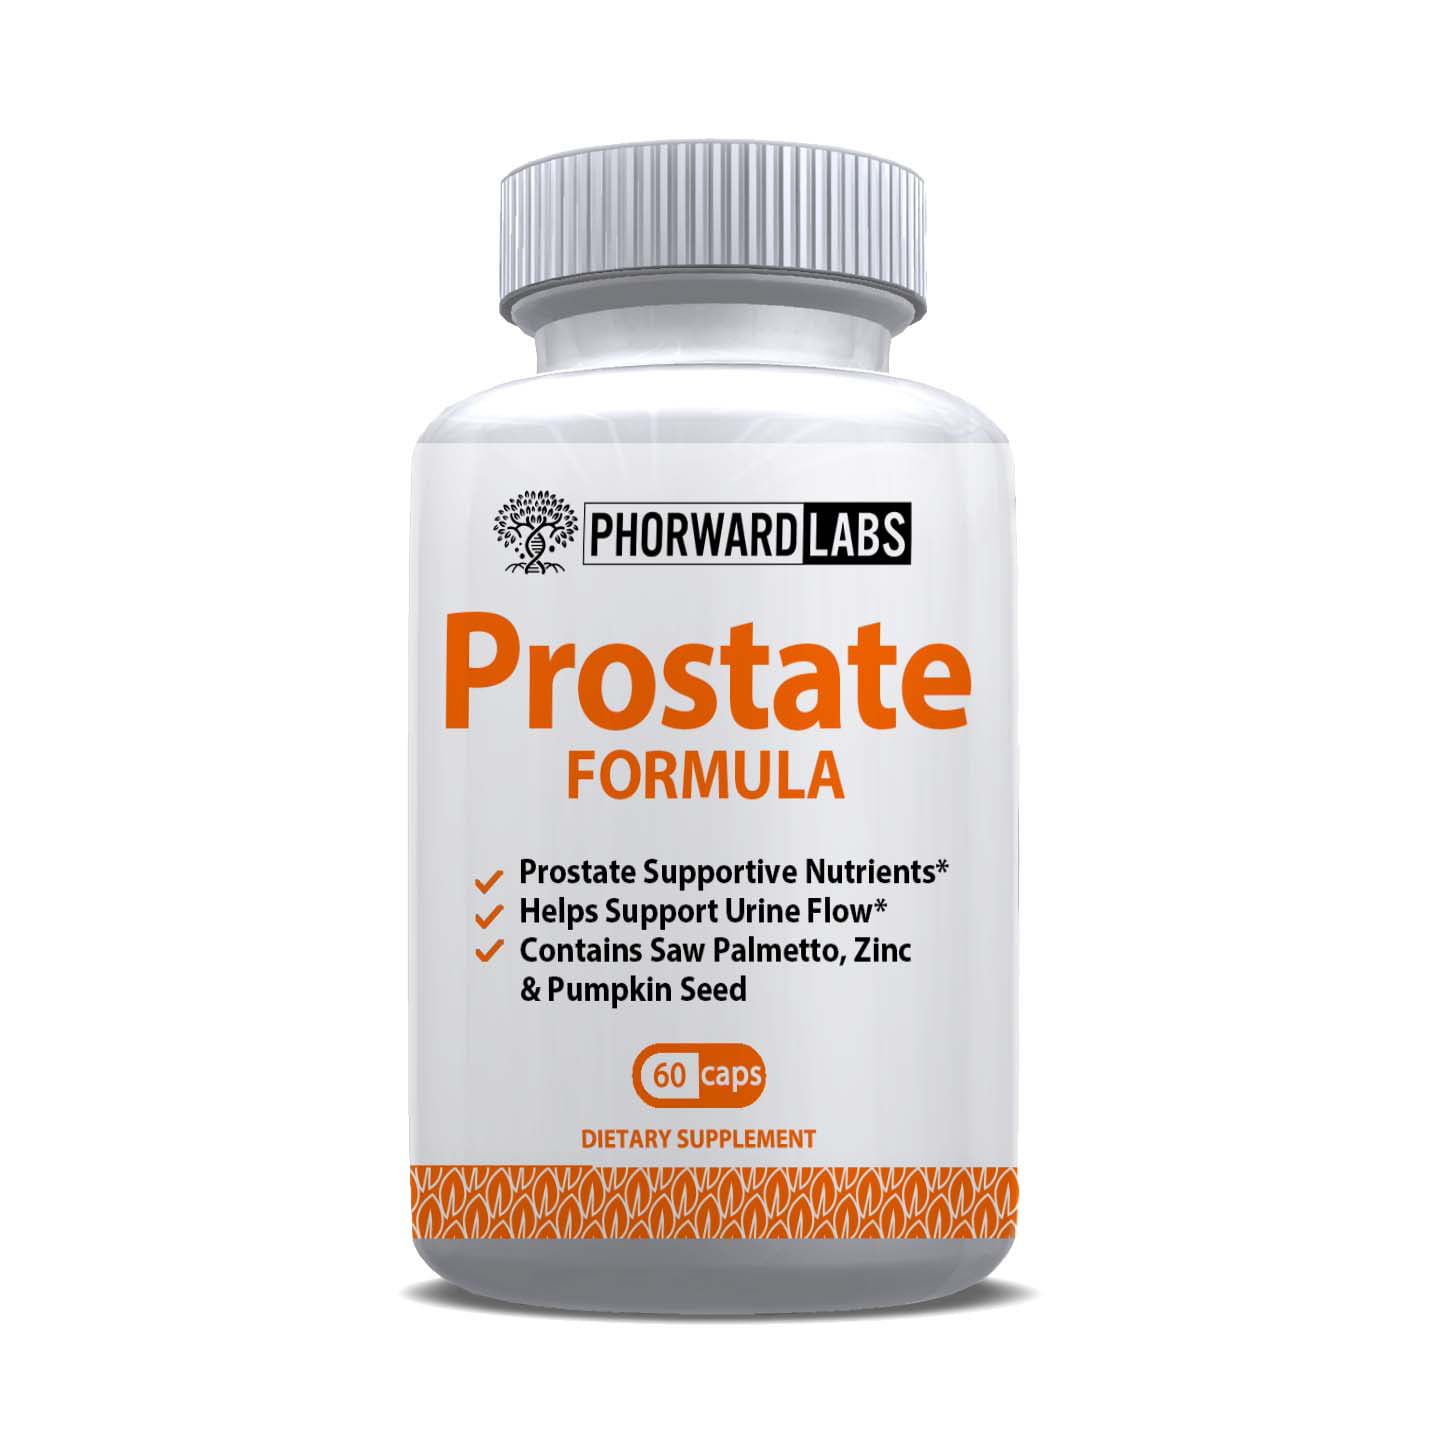 prostate formula with saw palmetto)